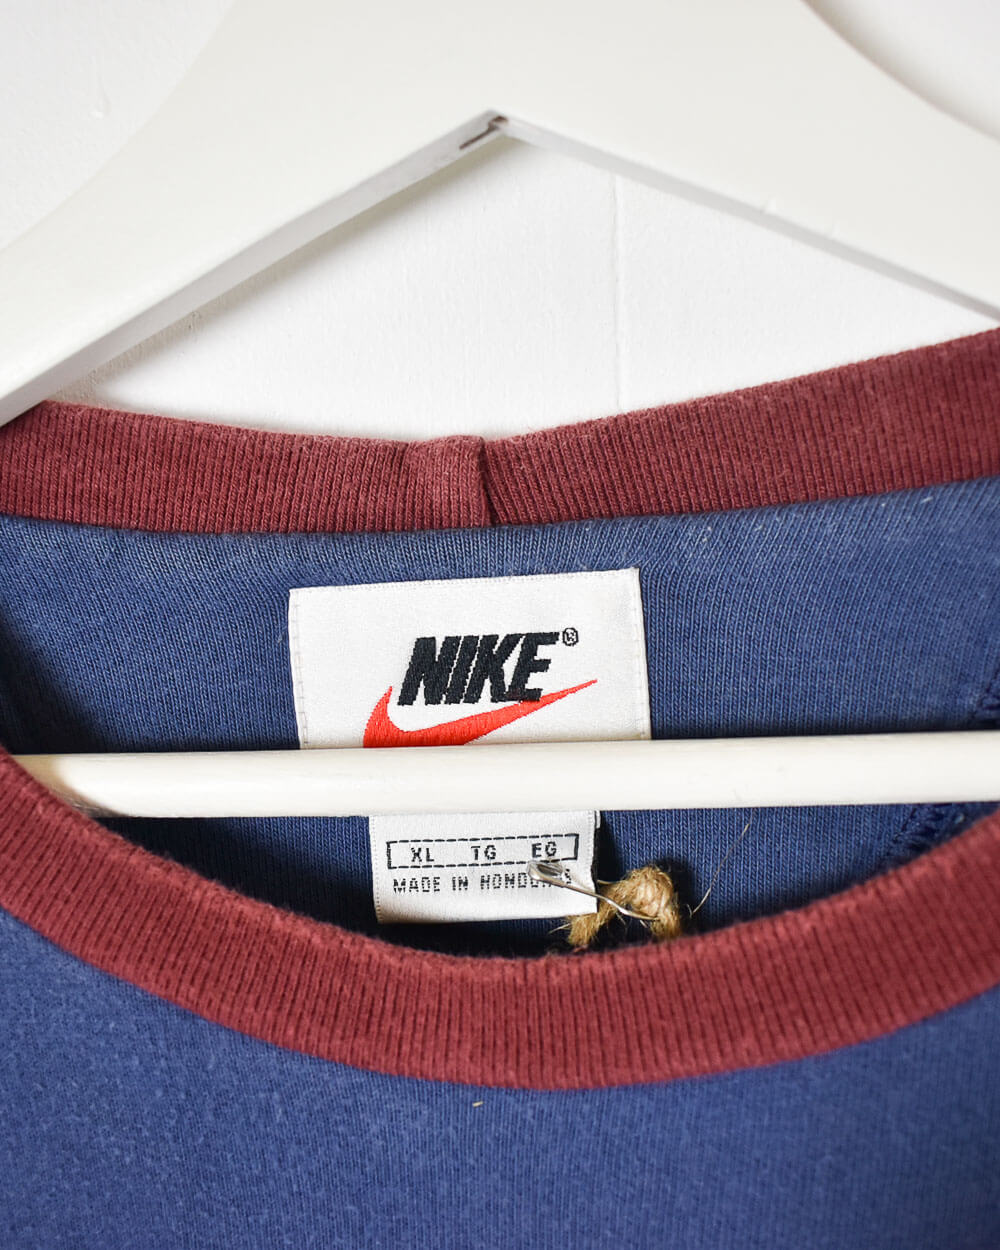 Blue Nike Sweatshirt - XX-Large